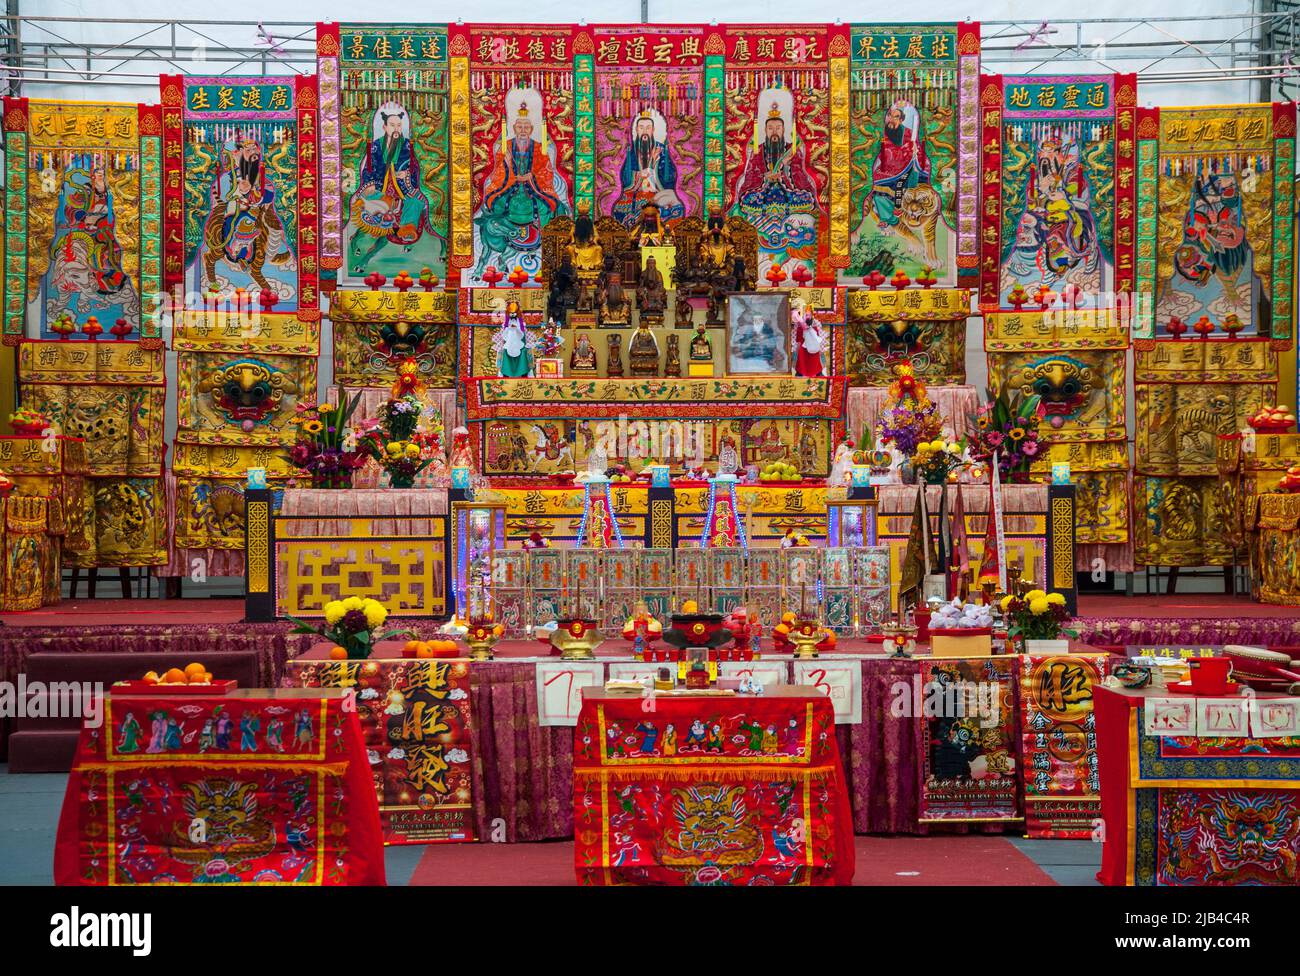 Traditioneller chinesischer Altar in einem Karnevalsfestzelt, Geylang, Singapur Stockfoto